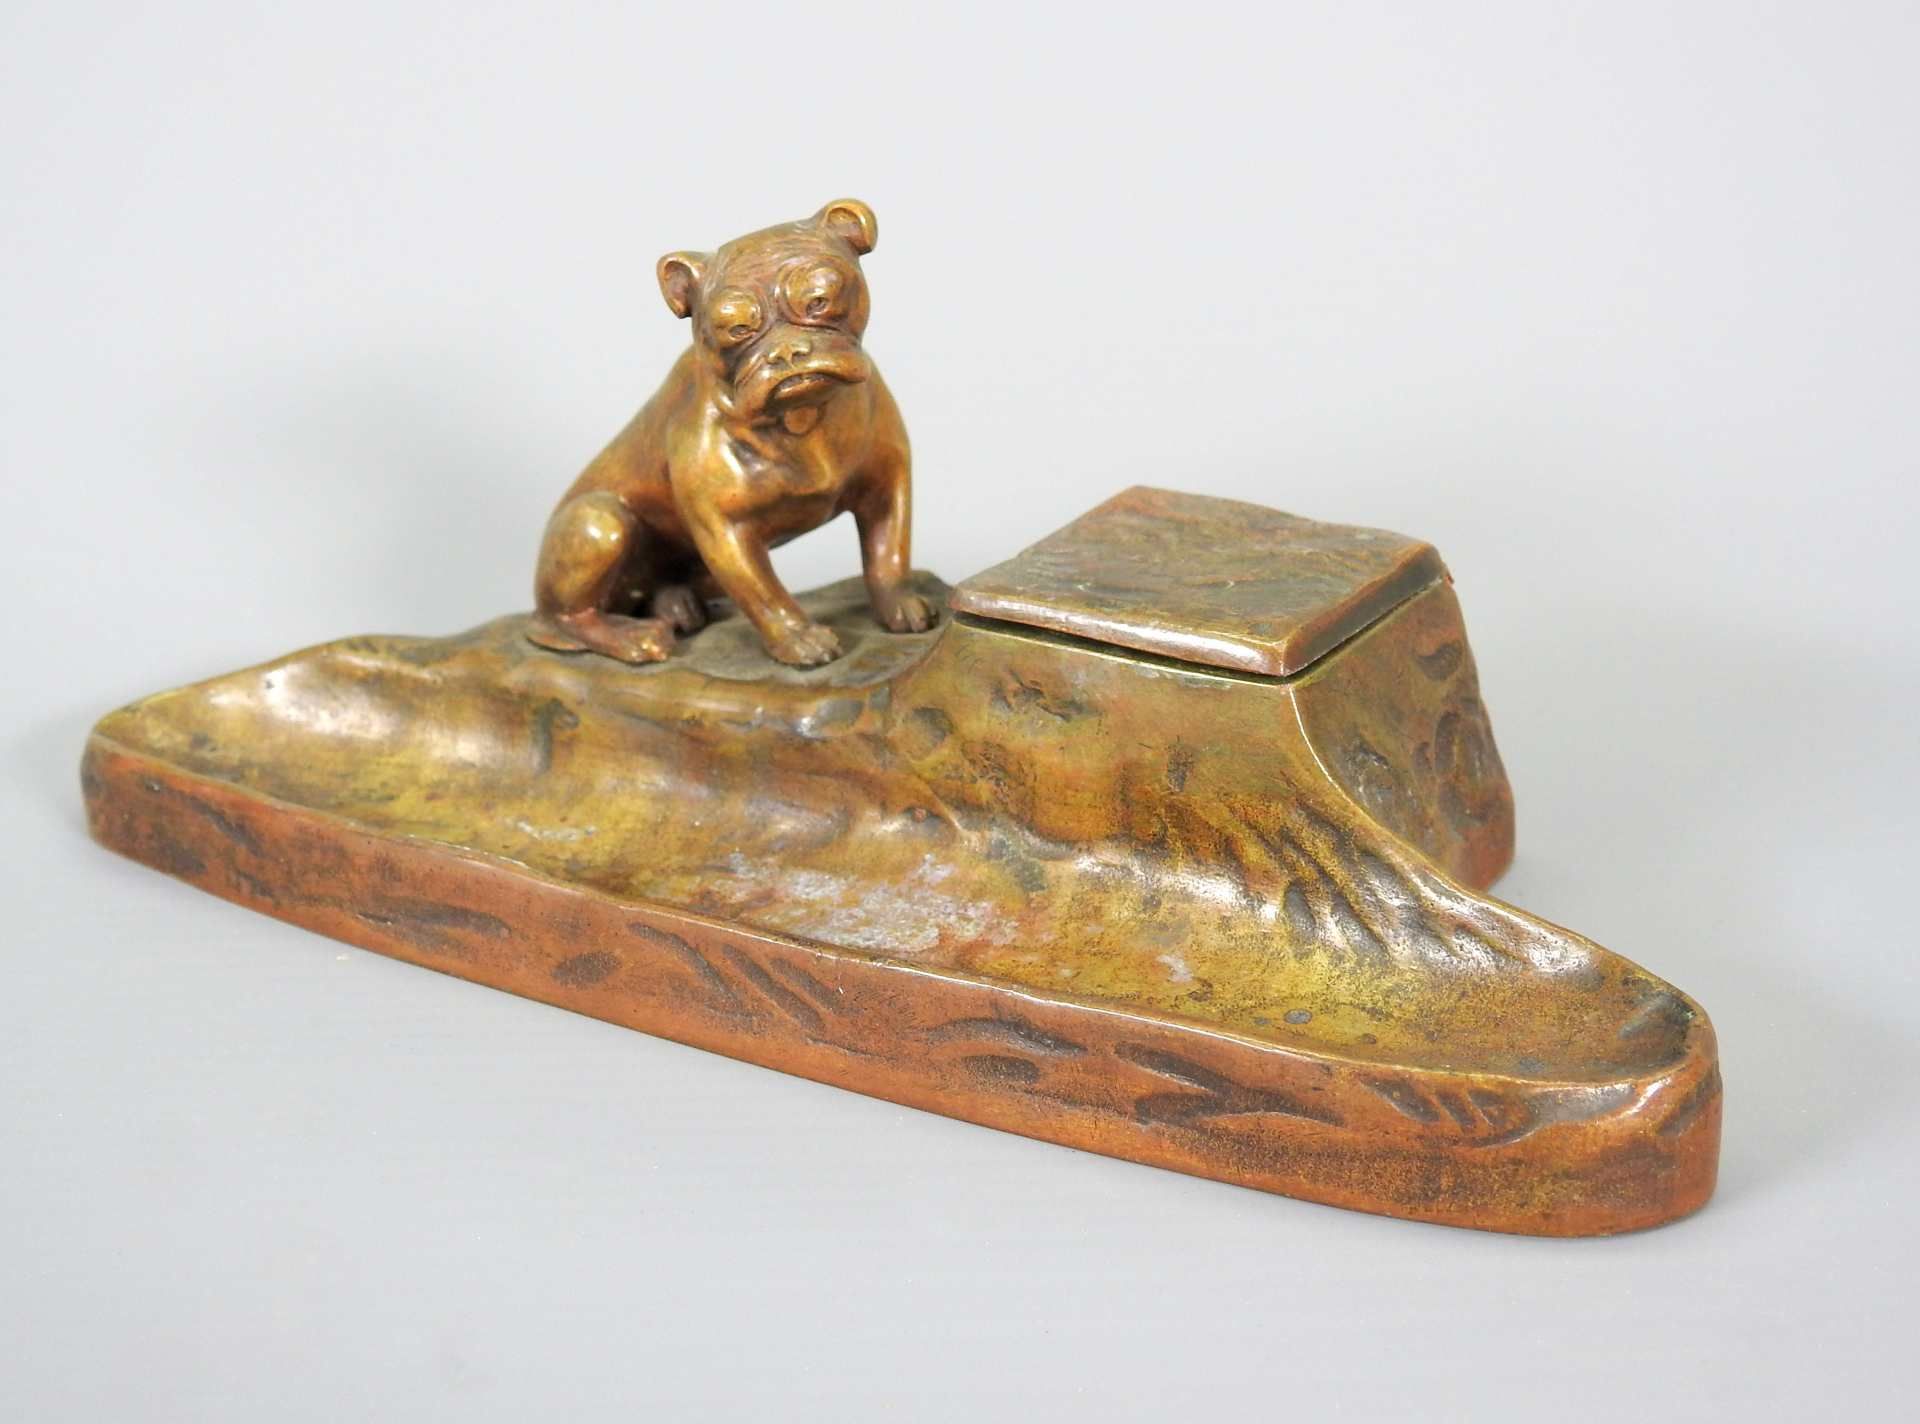 Tusca, Bronze-Tischset Bronze, braun patiniert. Stiftablage mit sitzender Bulldogge au - Image 4 of 5